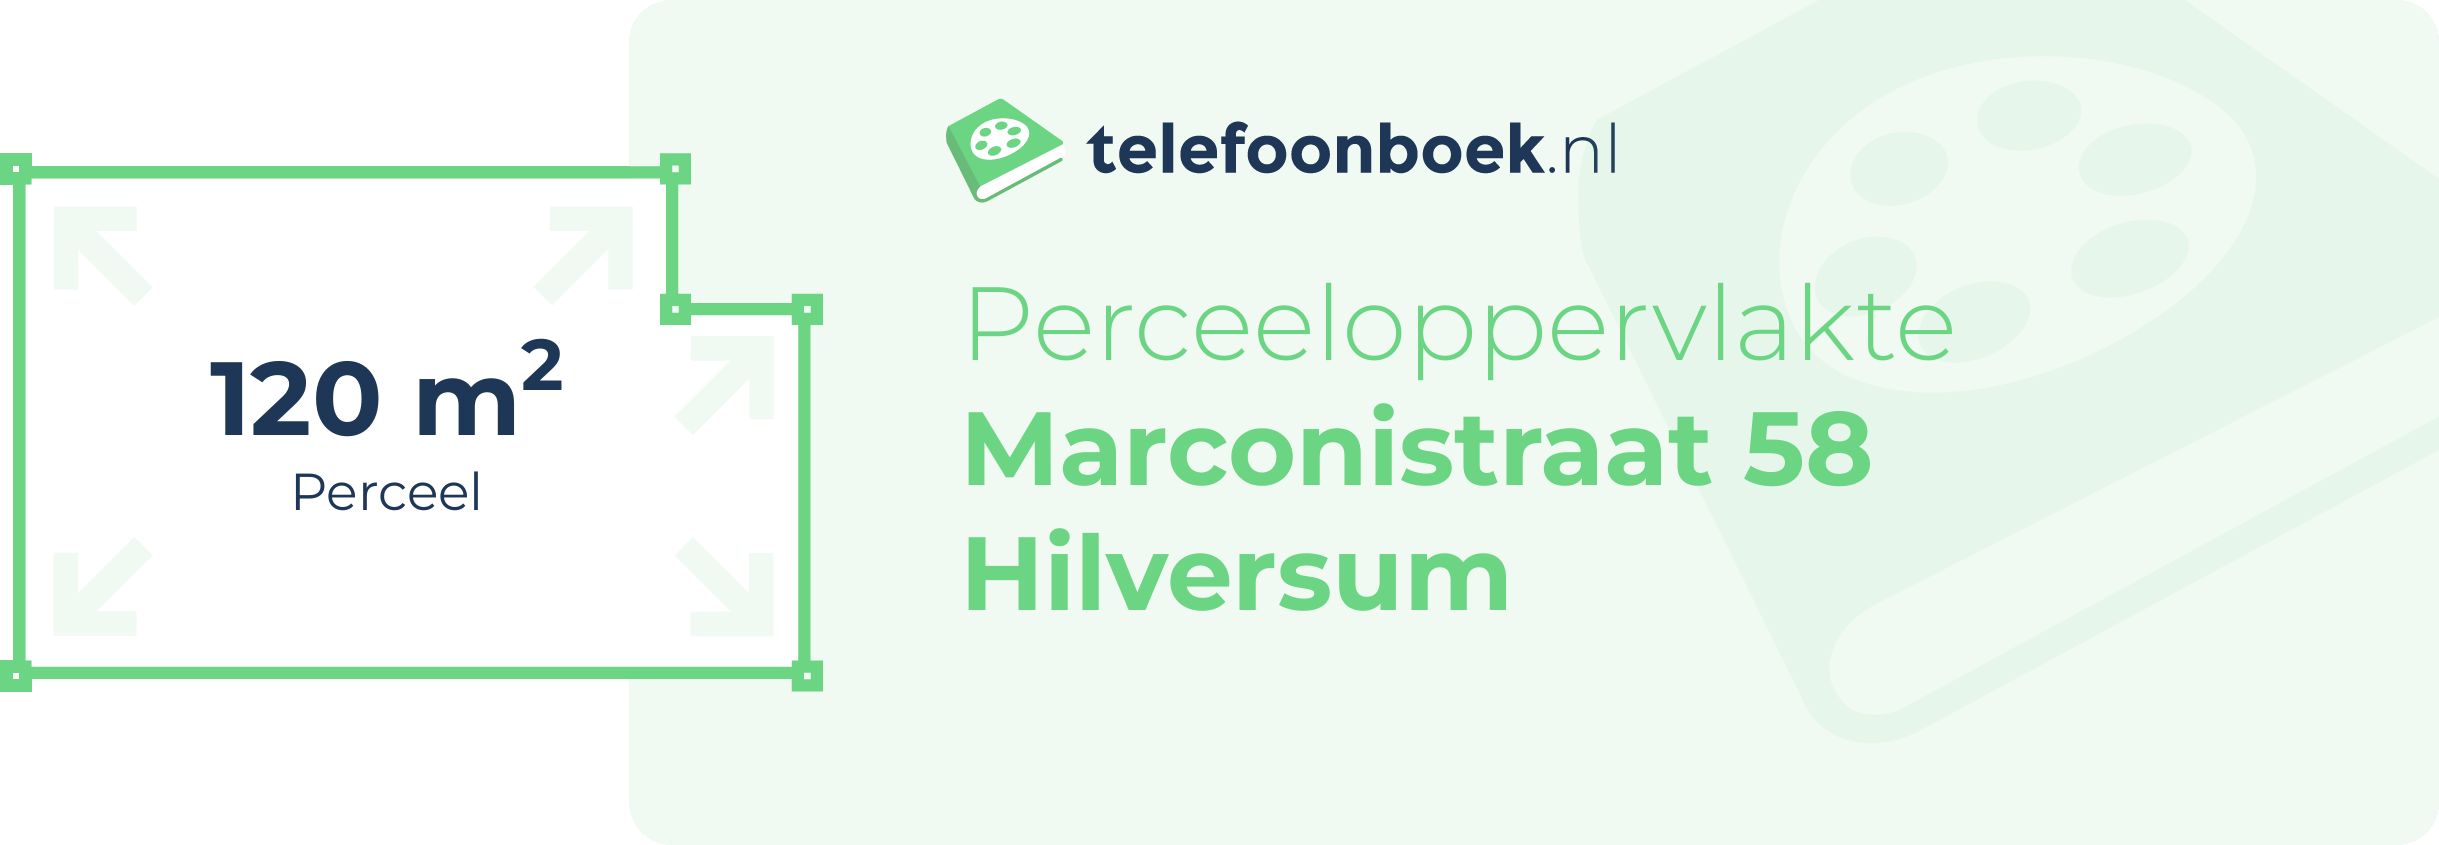 Perceeloppervlakte Marconistraat 58 Hilversum